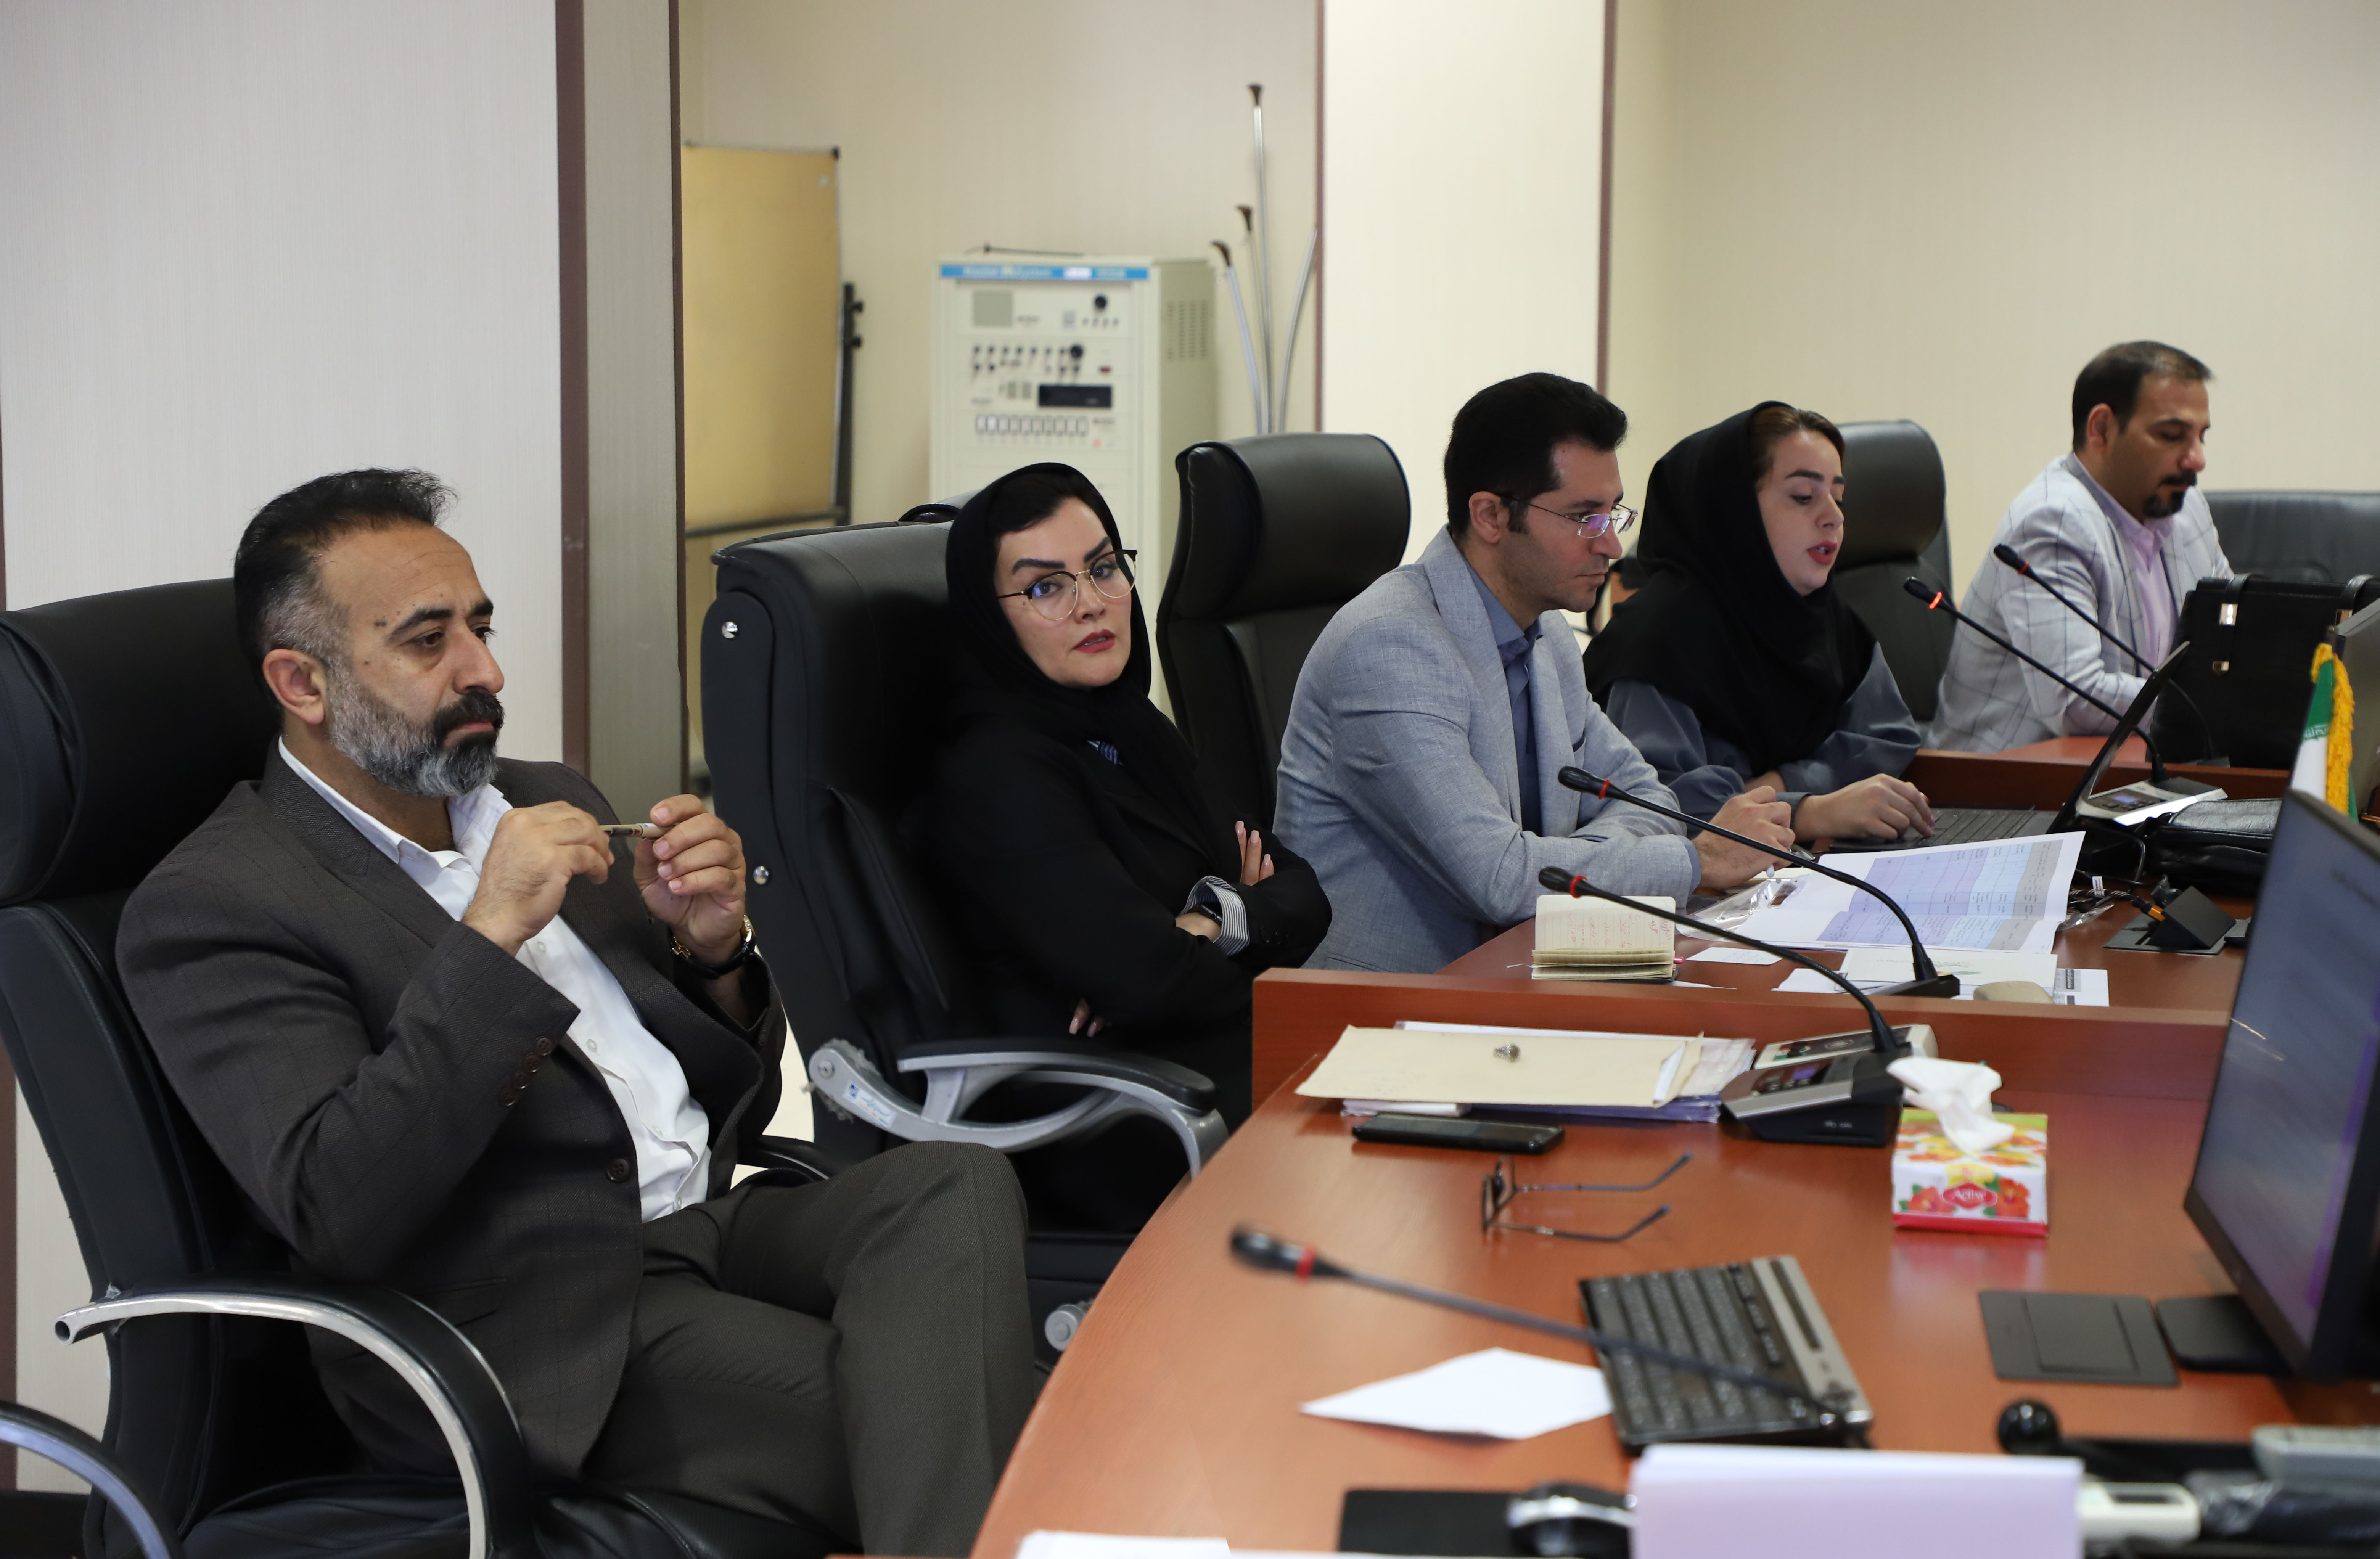 سند فرصتهای سرمایه گذاری در صحن شورای اسلامی شاهین شهر